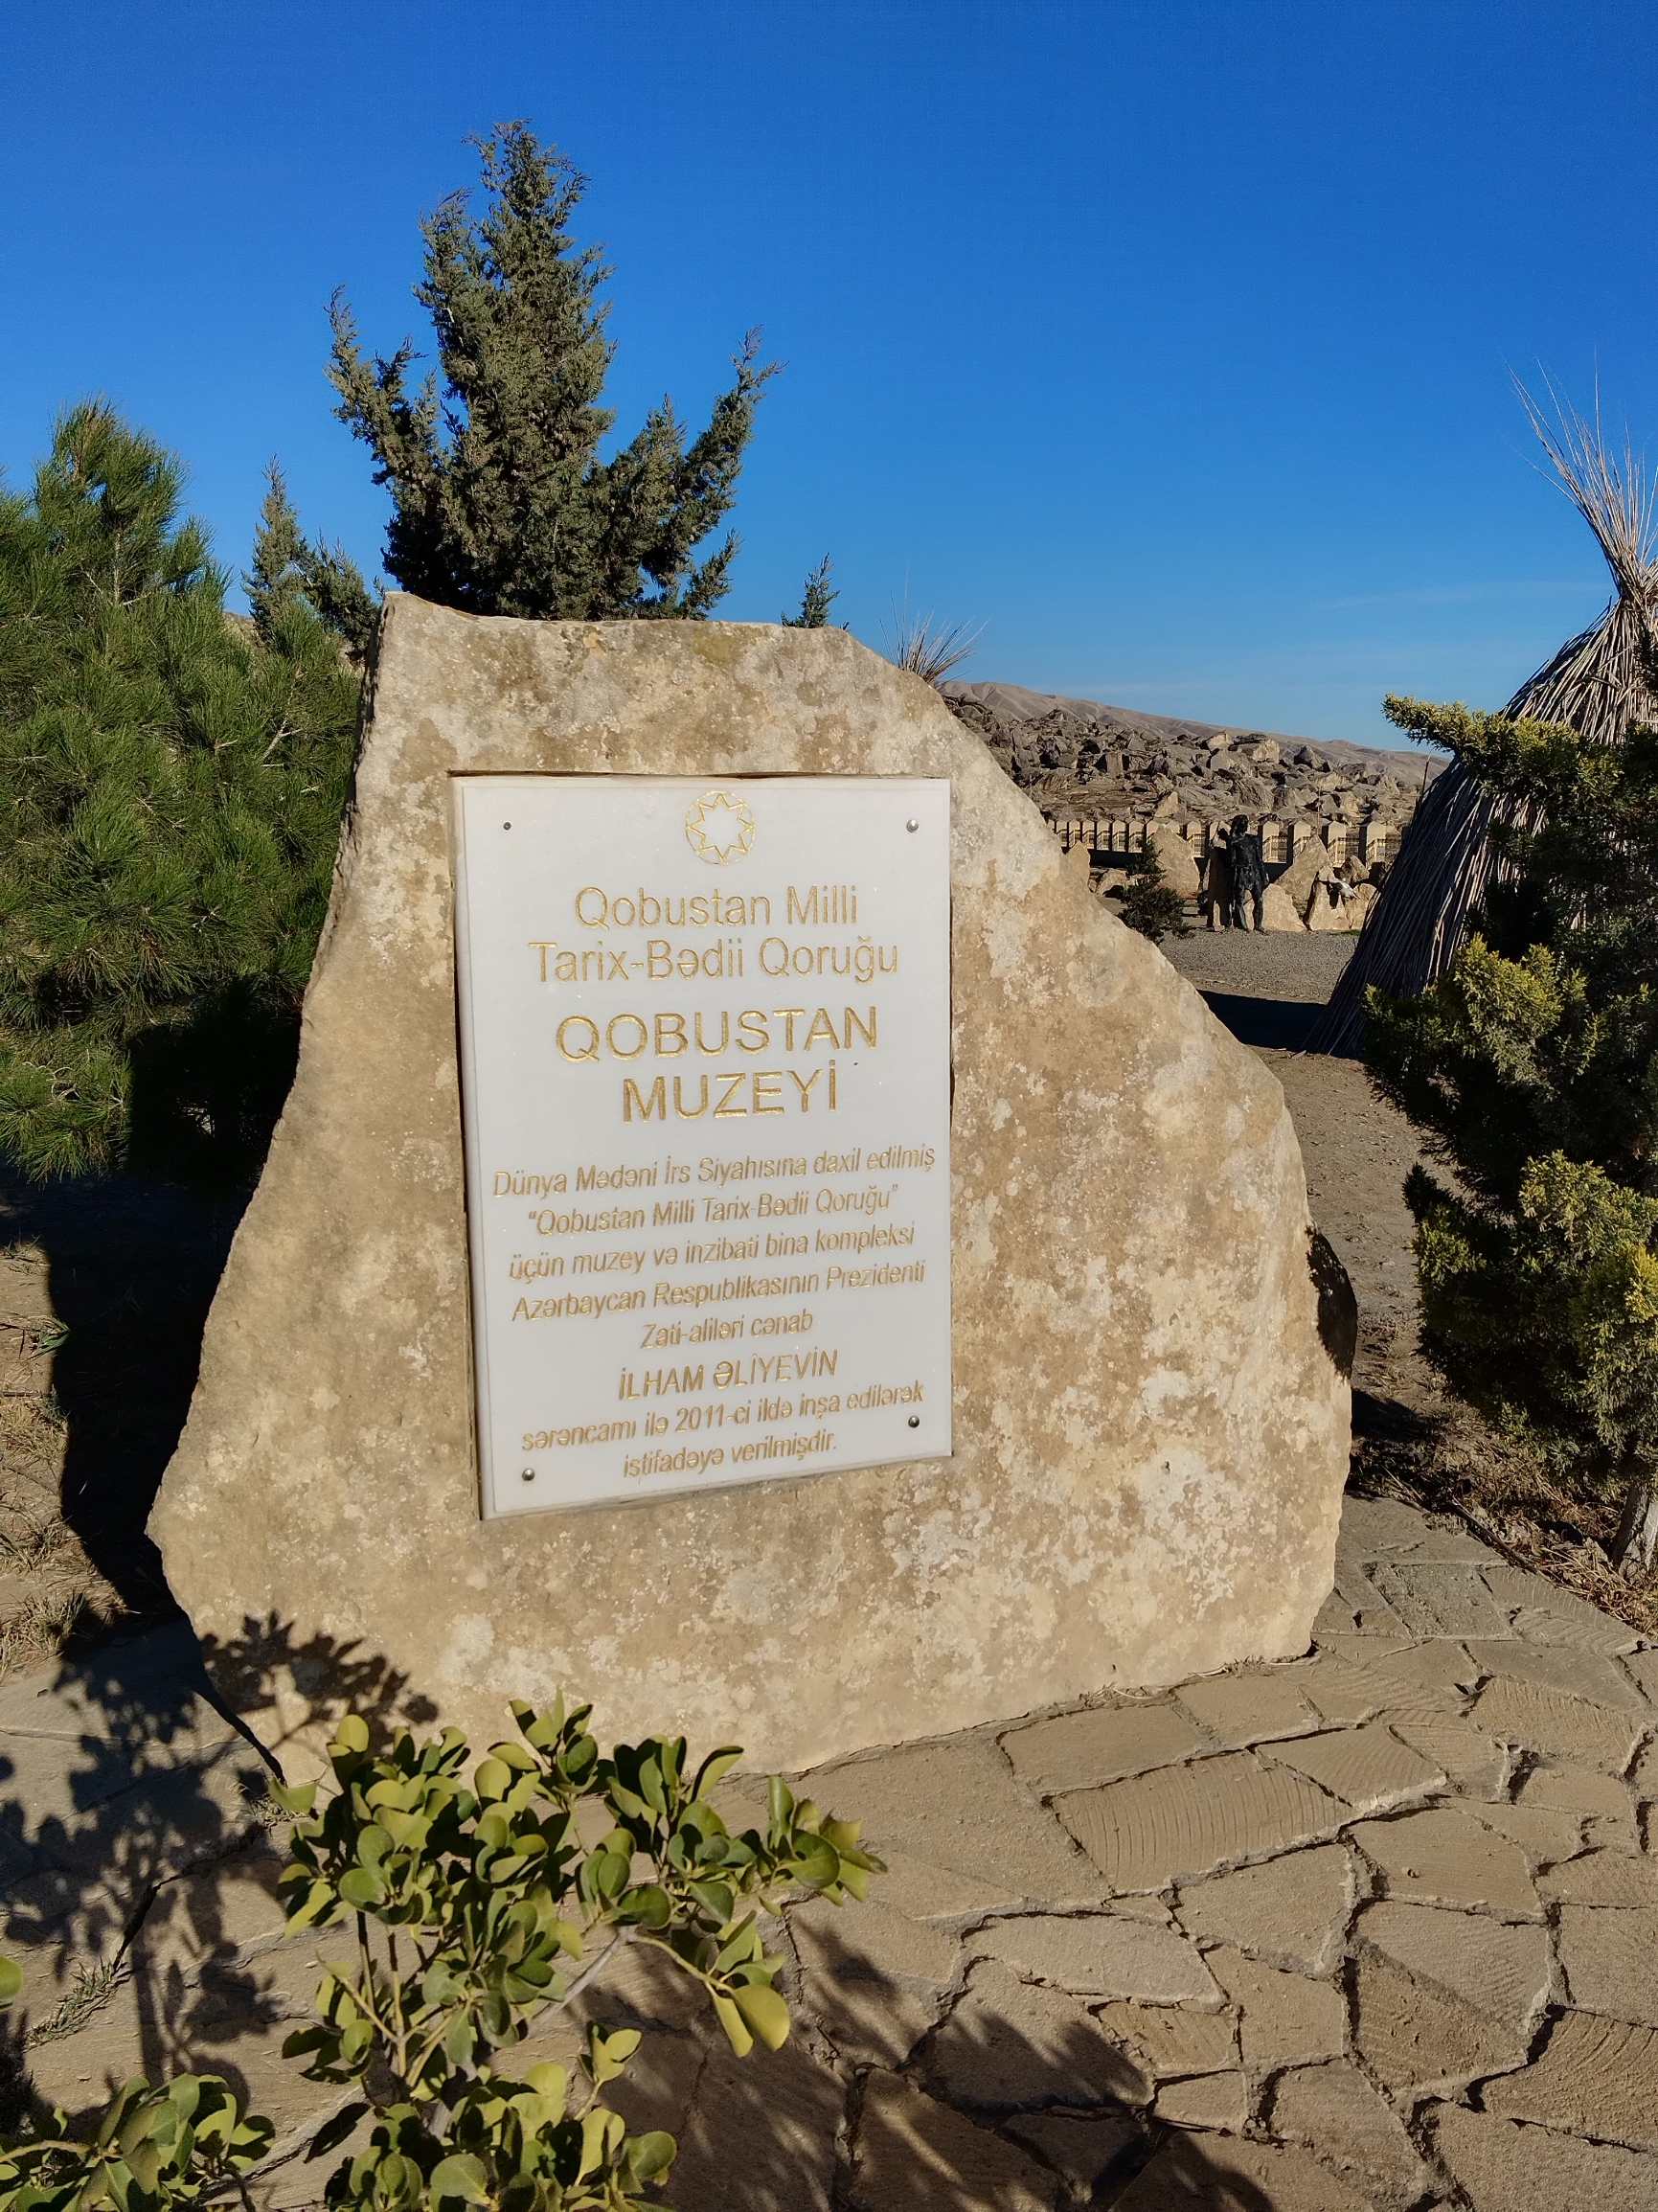 戈布斯坦岩石艺术文化景区距离阿塞拜疆共和国首都巴库大约40英里，这里的古人类生活遗迹于2007年的第